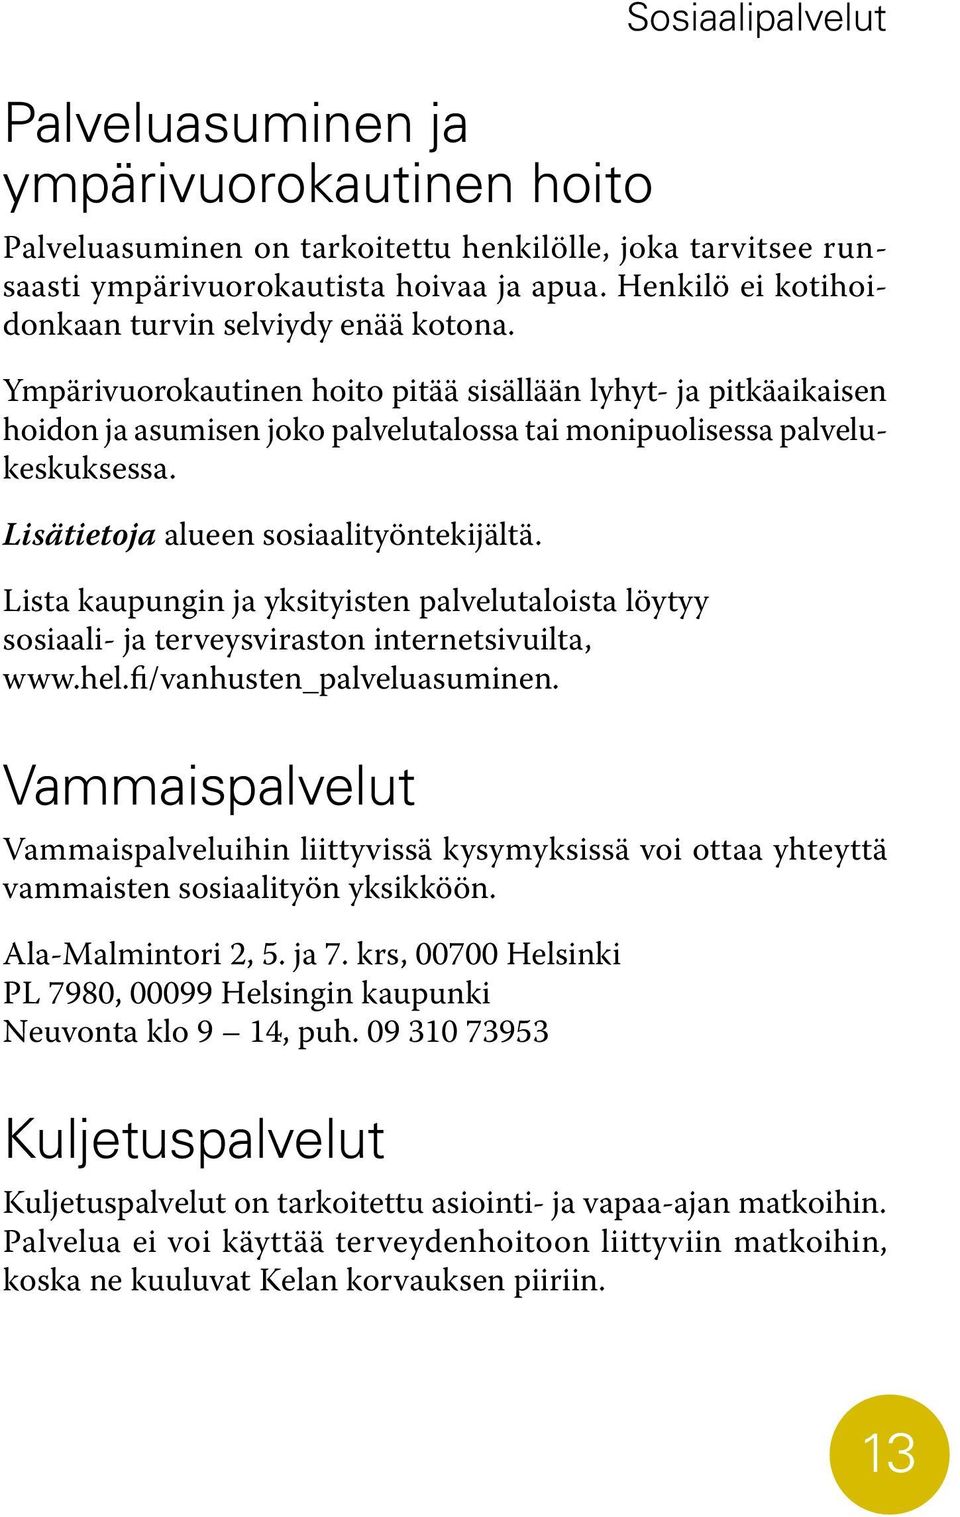 Lisätietoja alueen sosiaalityöntekijältä. Lista kaupungin ja yksityisten palvelutaloista löytyy sosiaali- ja terveysviraston internetsivuilta, www.hel.fi/vanhusten_palveluasuminen.